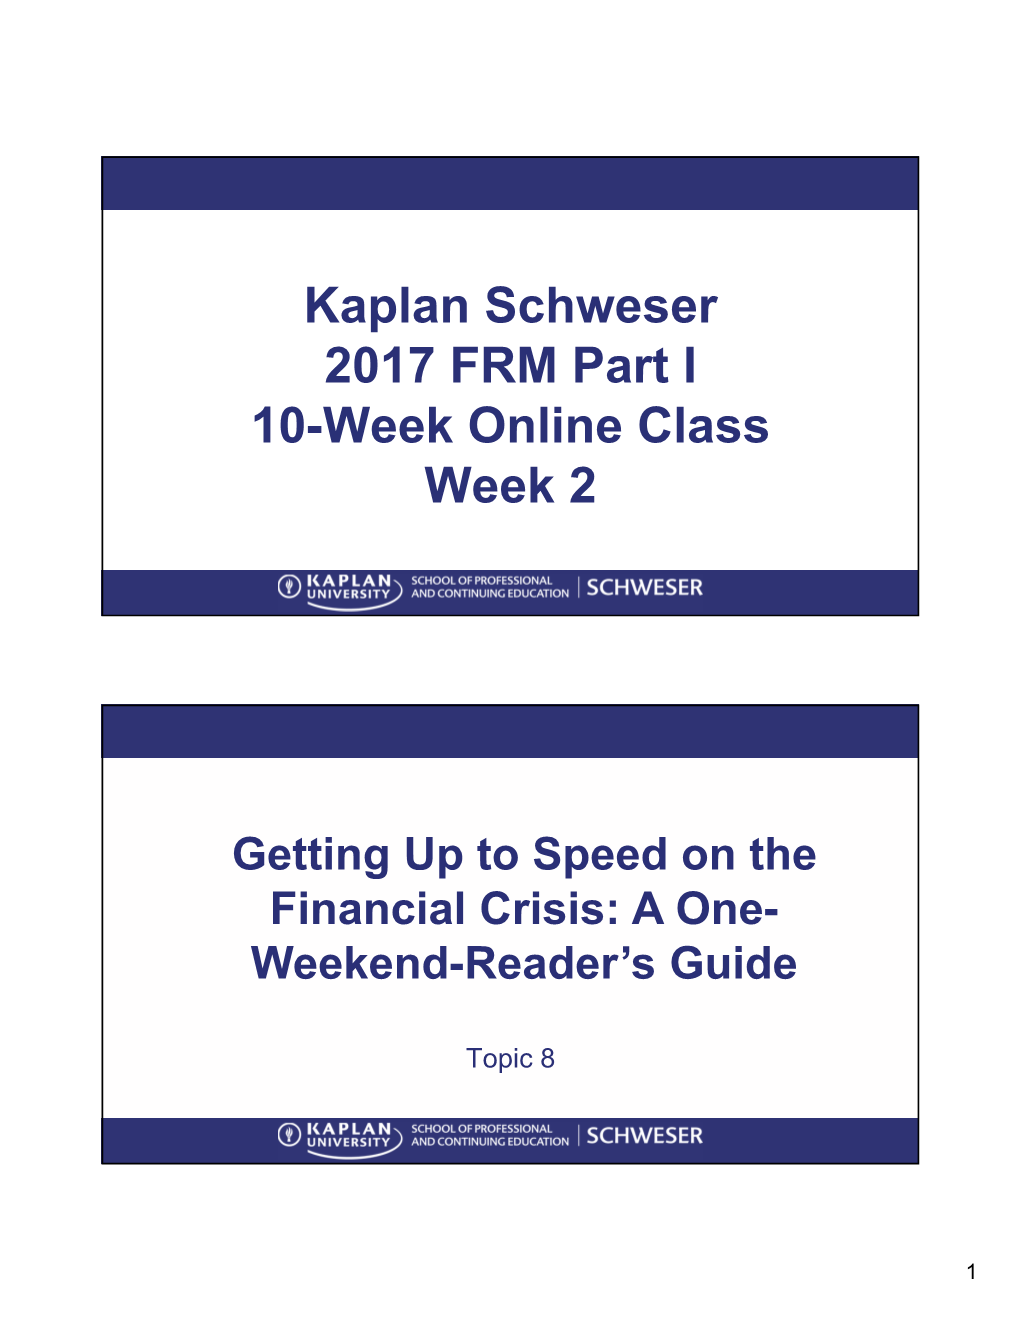 Kaplan Schweser 2017 FRM Part I 10-Week Online Class Week 2